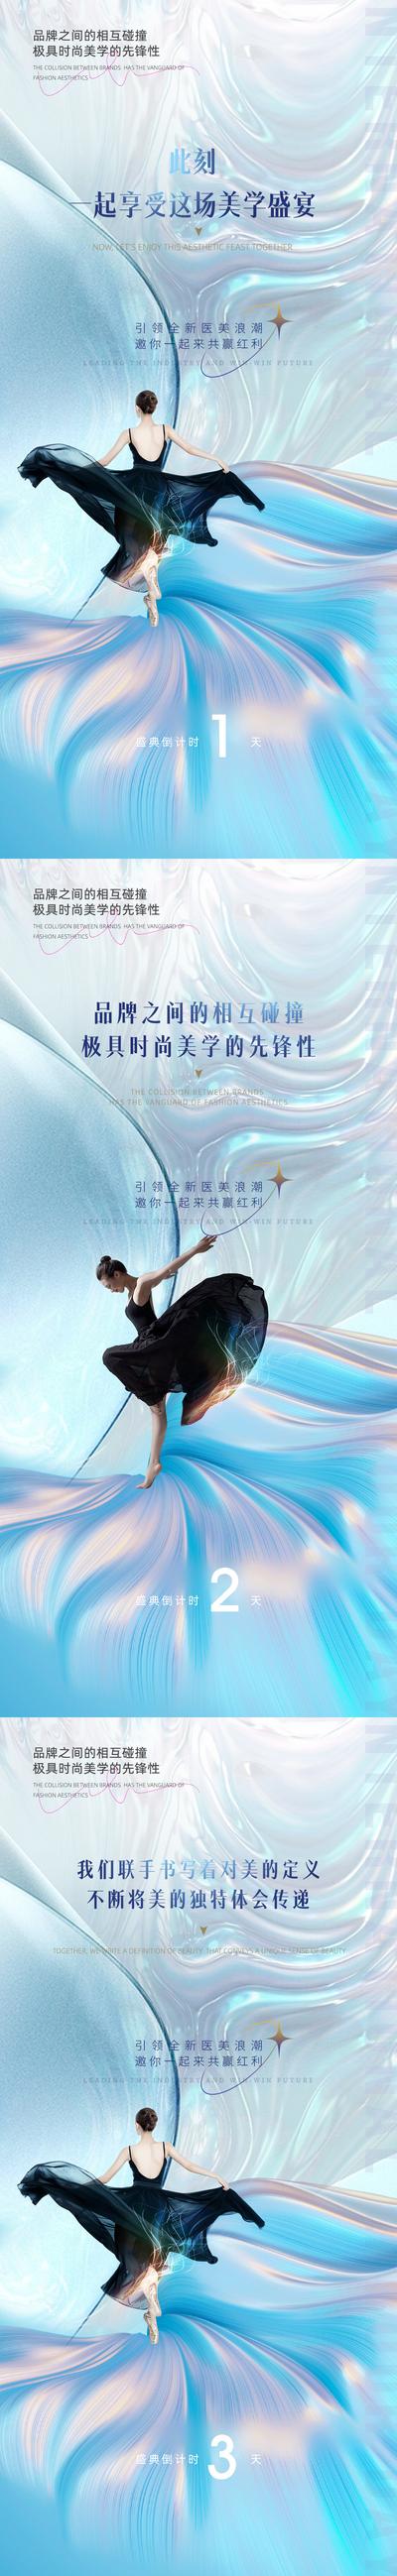 【南门网】广告 海报 创意 倒计时 发布会 沙龙 活动 人物 舞蹈